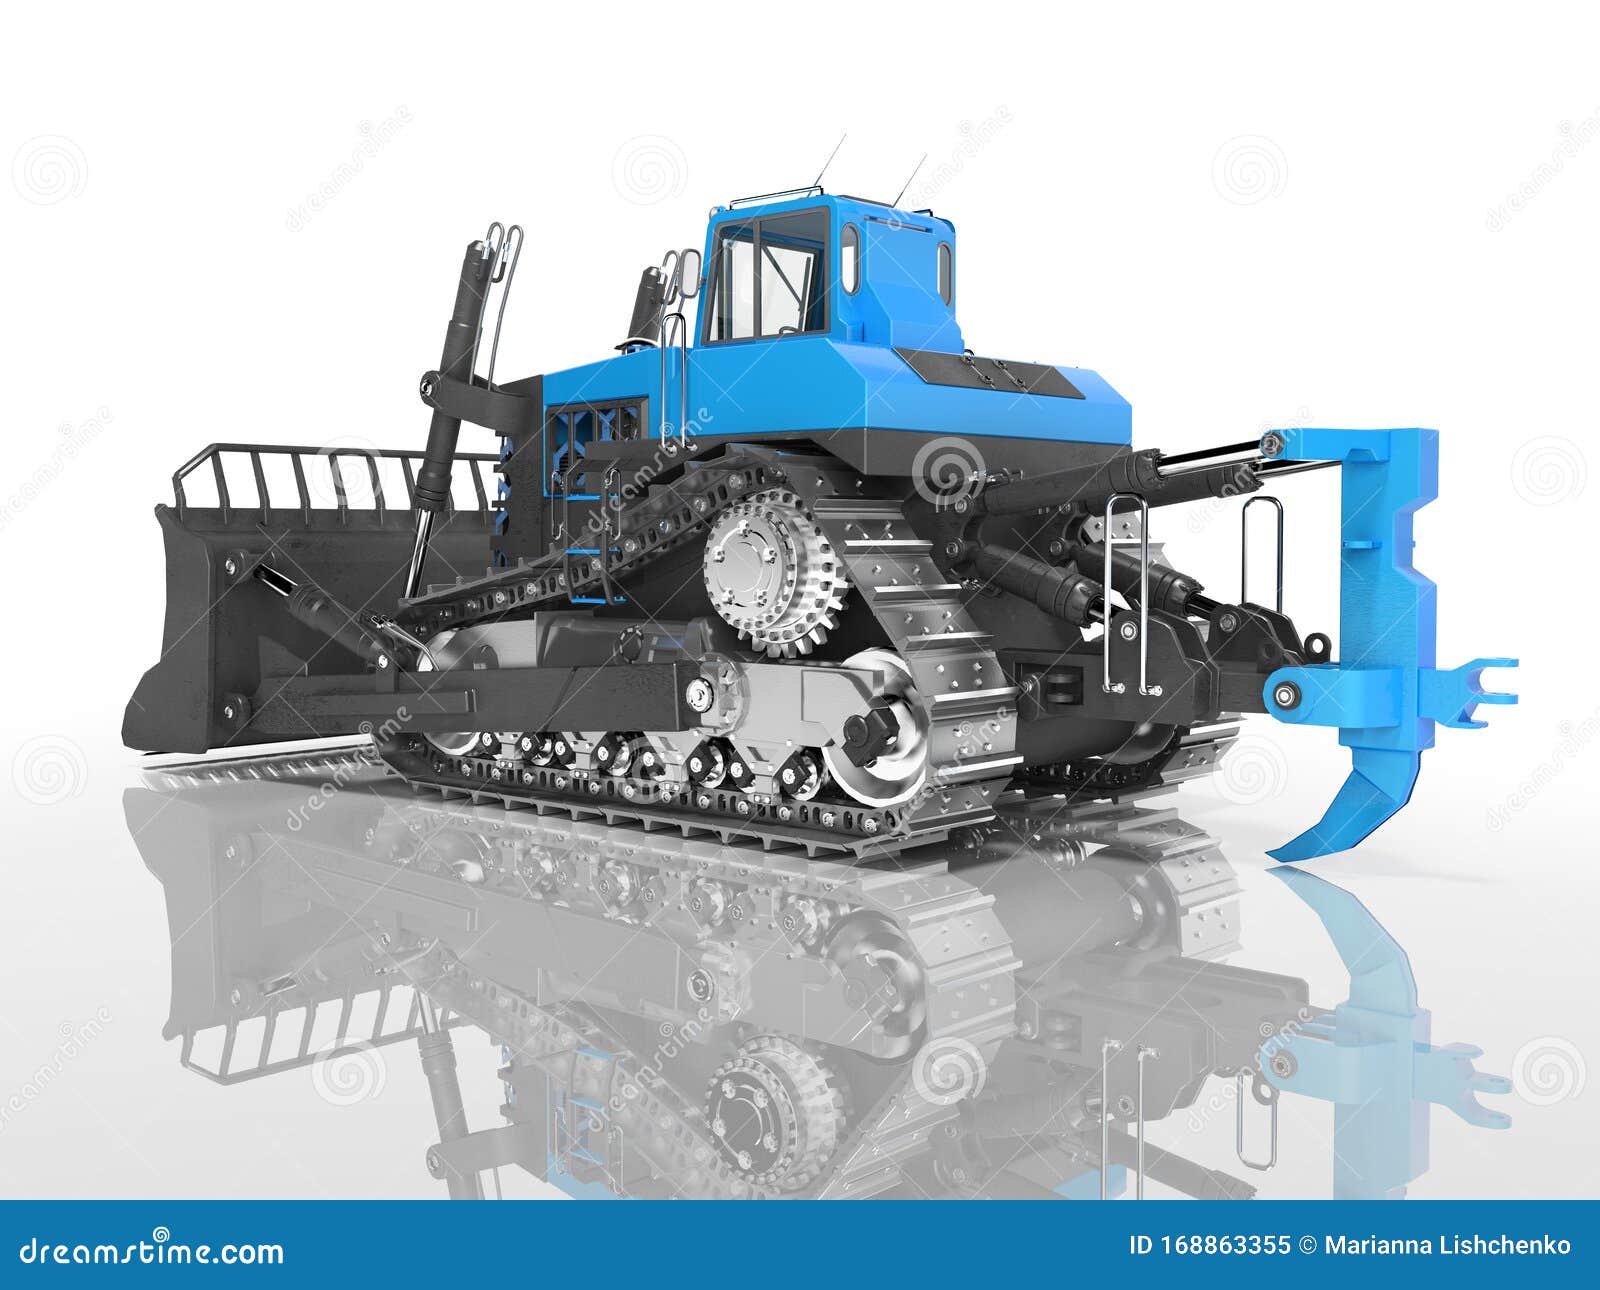 tecnolog%C3%ADa-profesional-caterpillar-bulldozer-azul-d-renderizado-sobre-fondo-blanco-con-sombra-168863355.jpg